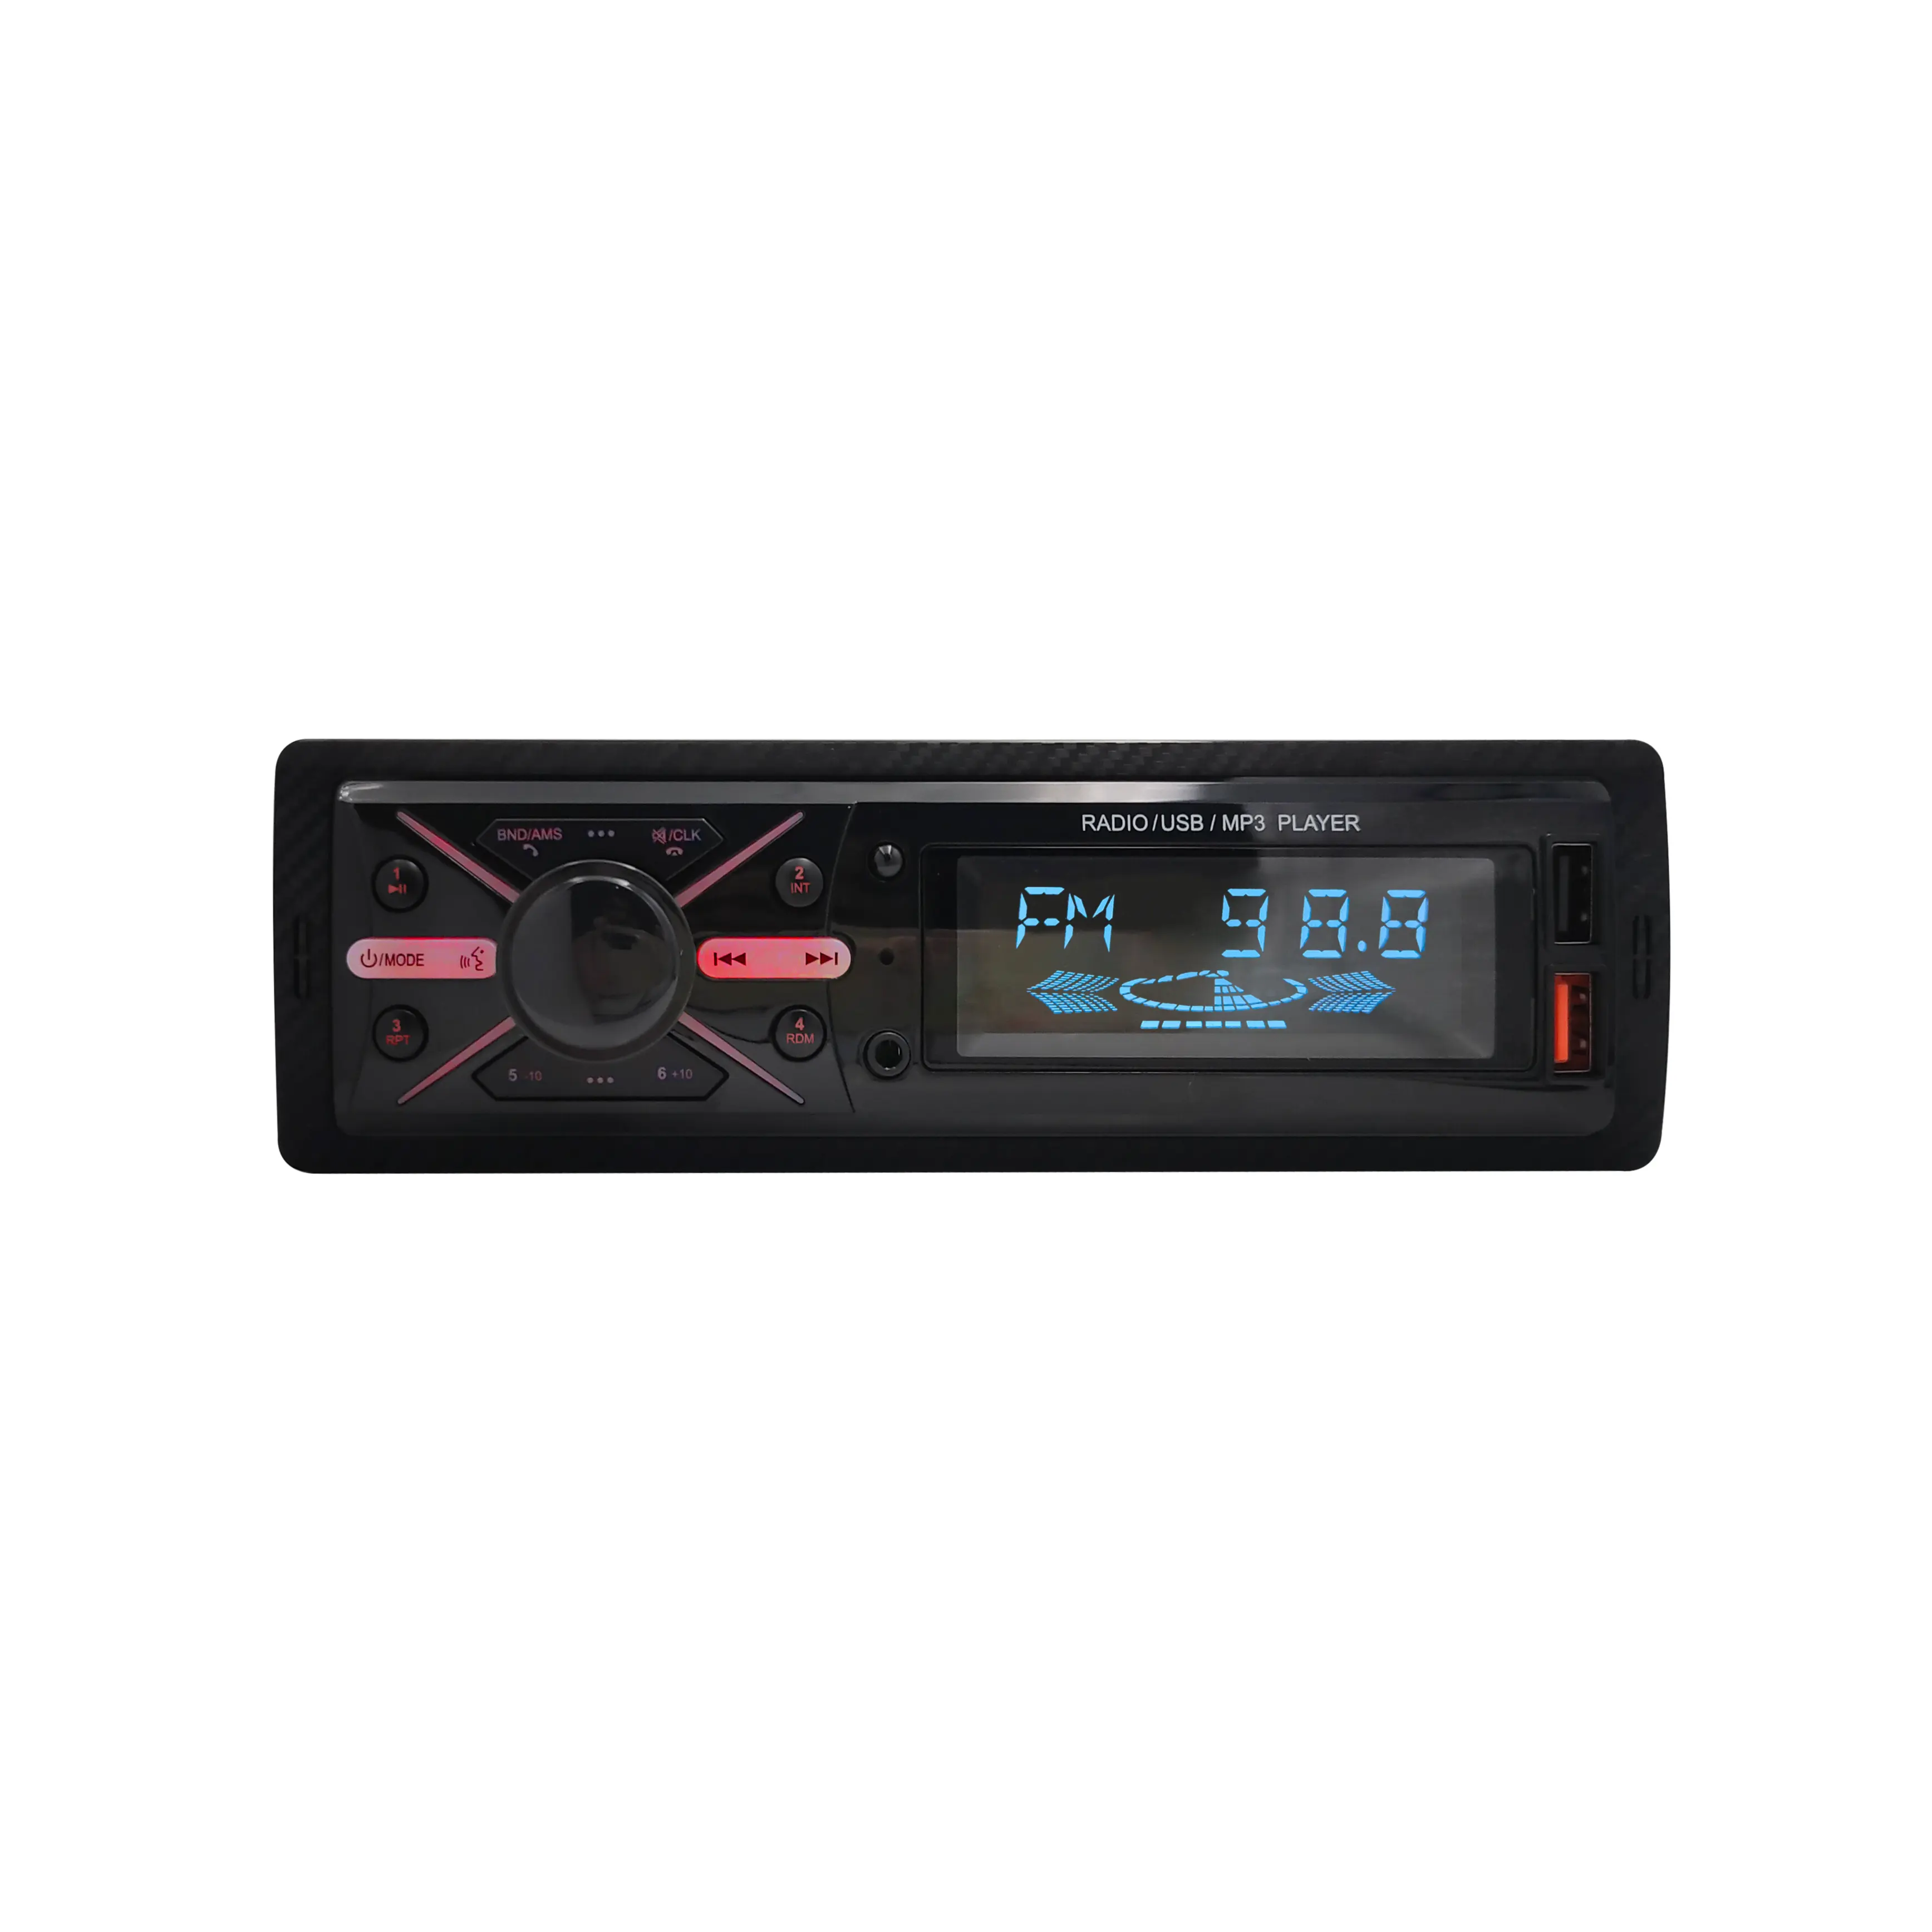 Reproductor de MP3 barato para coche VA radio de coche LCD en blanco y negro audio de coche de alta potencia